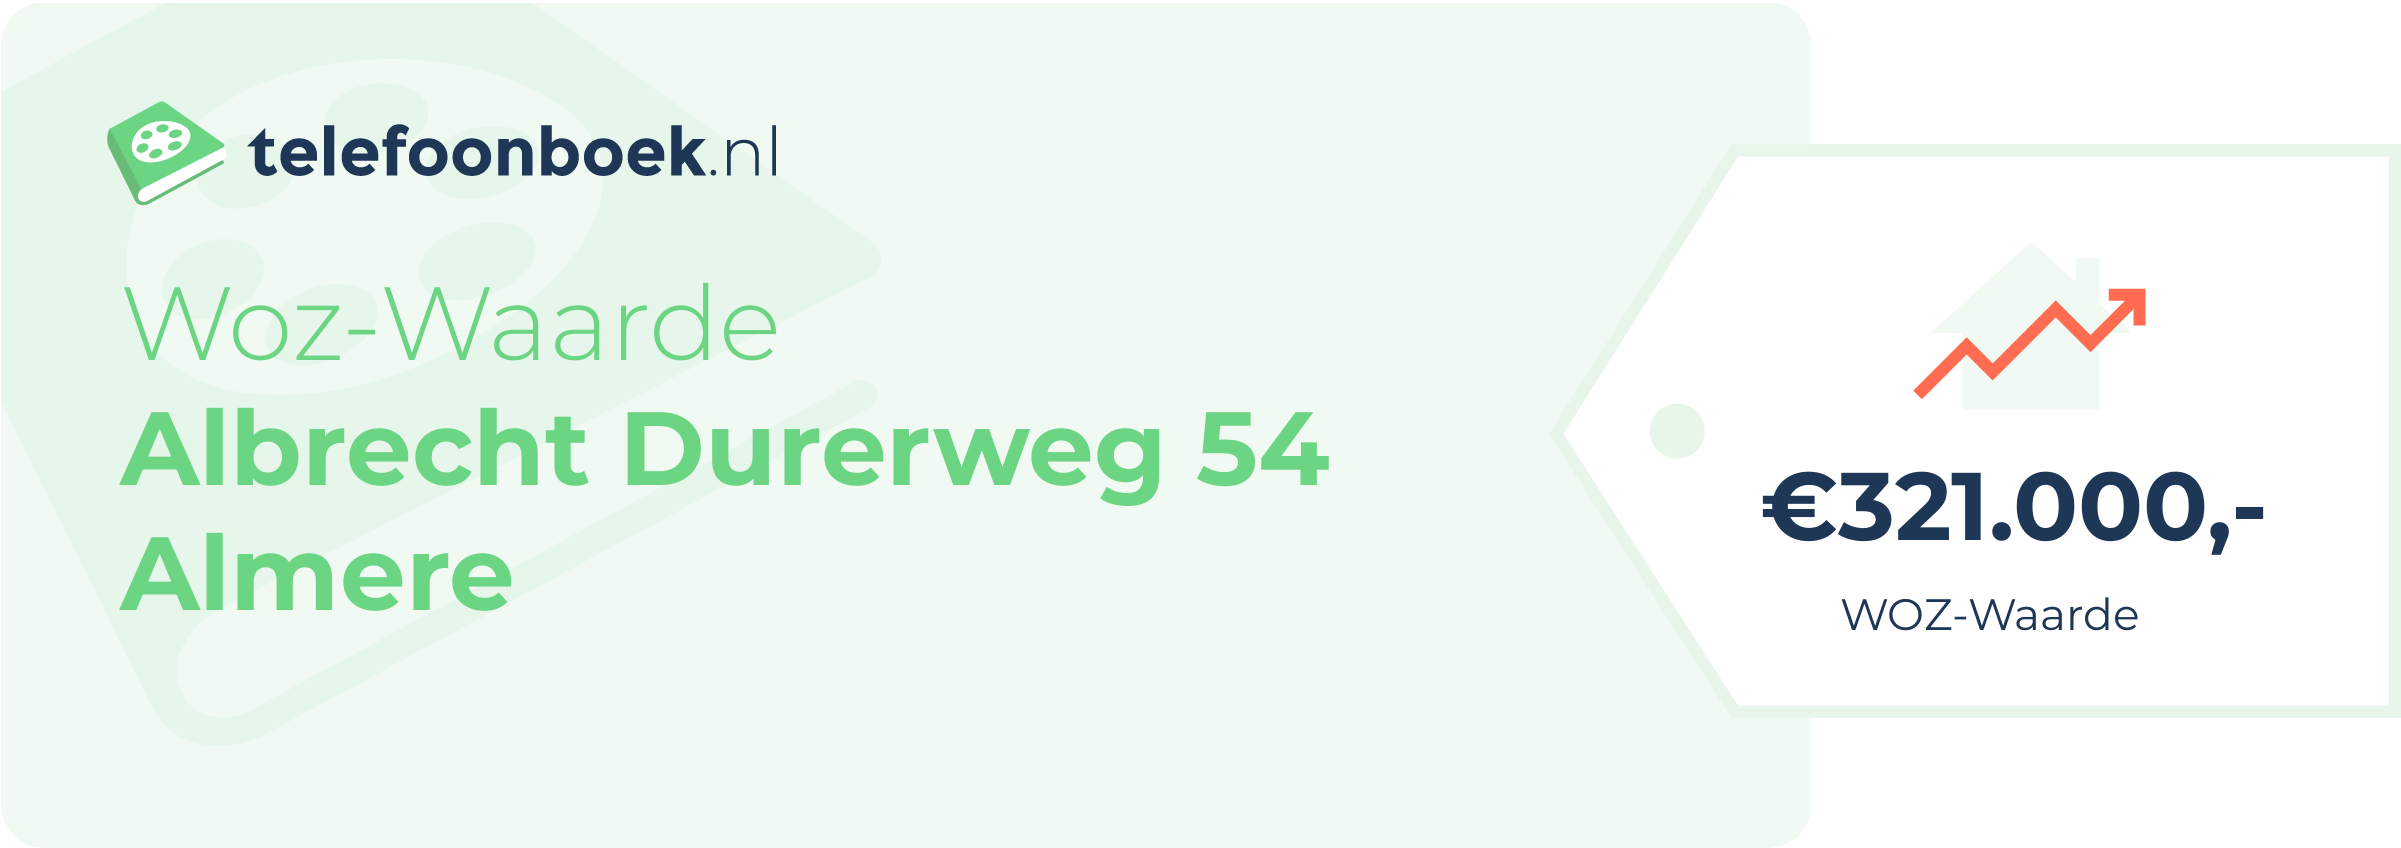 WOZ-waarde Albrecht Durerweg 54 Almere